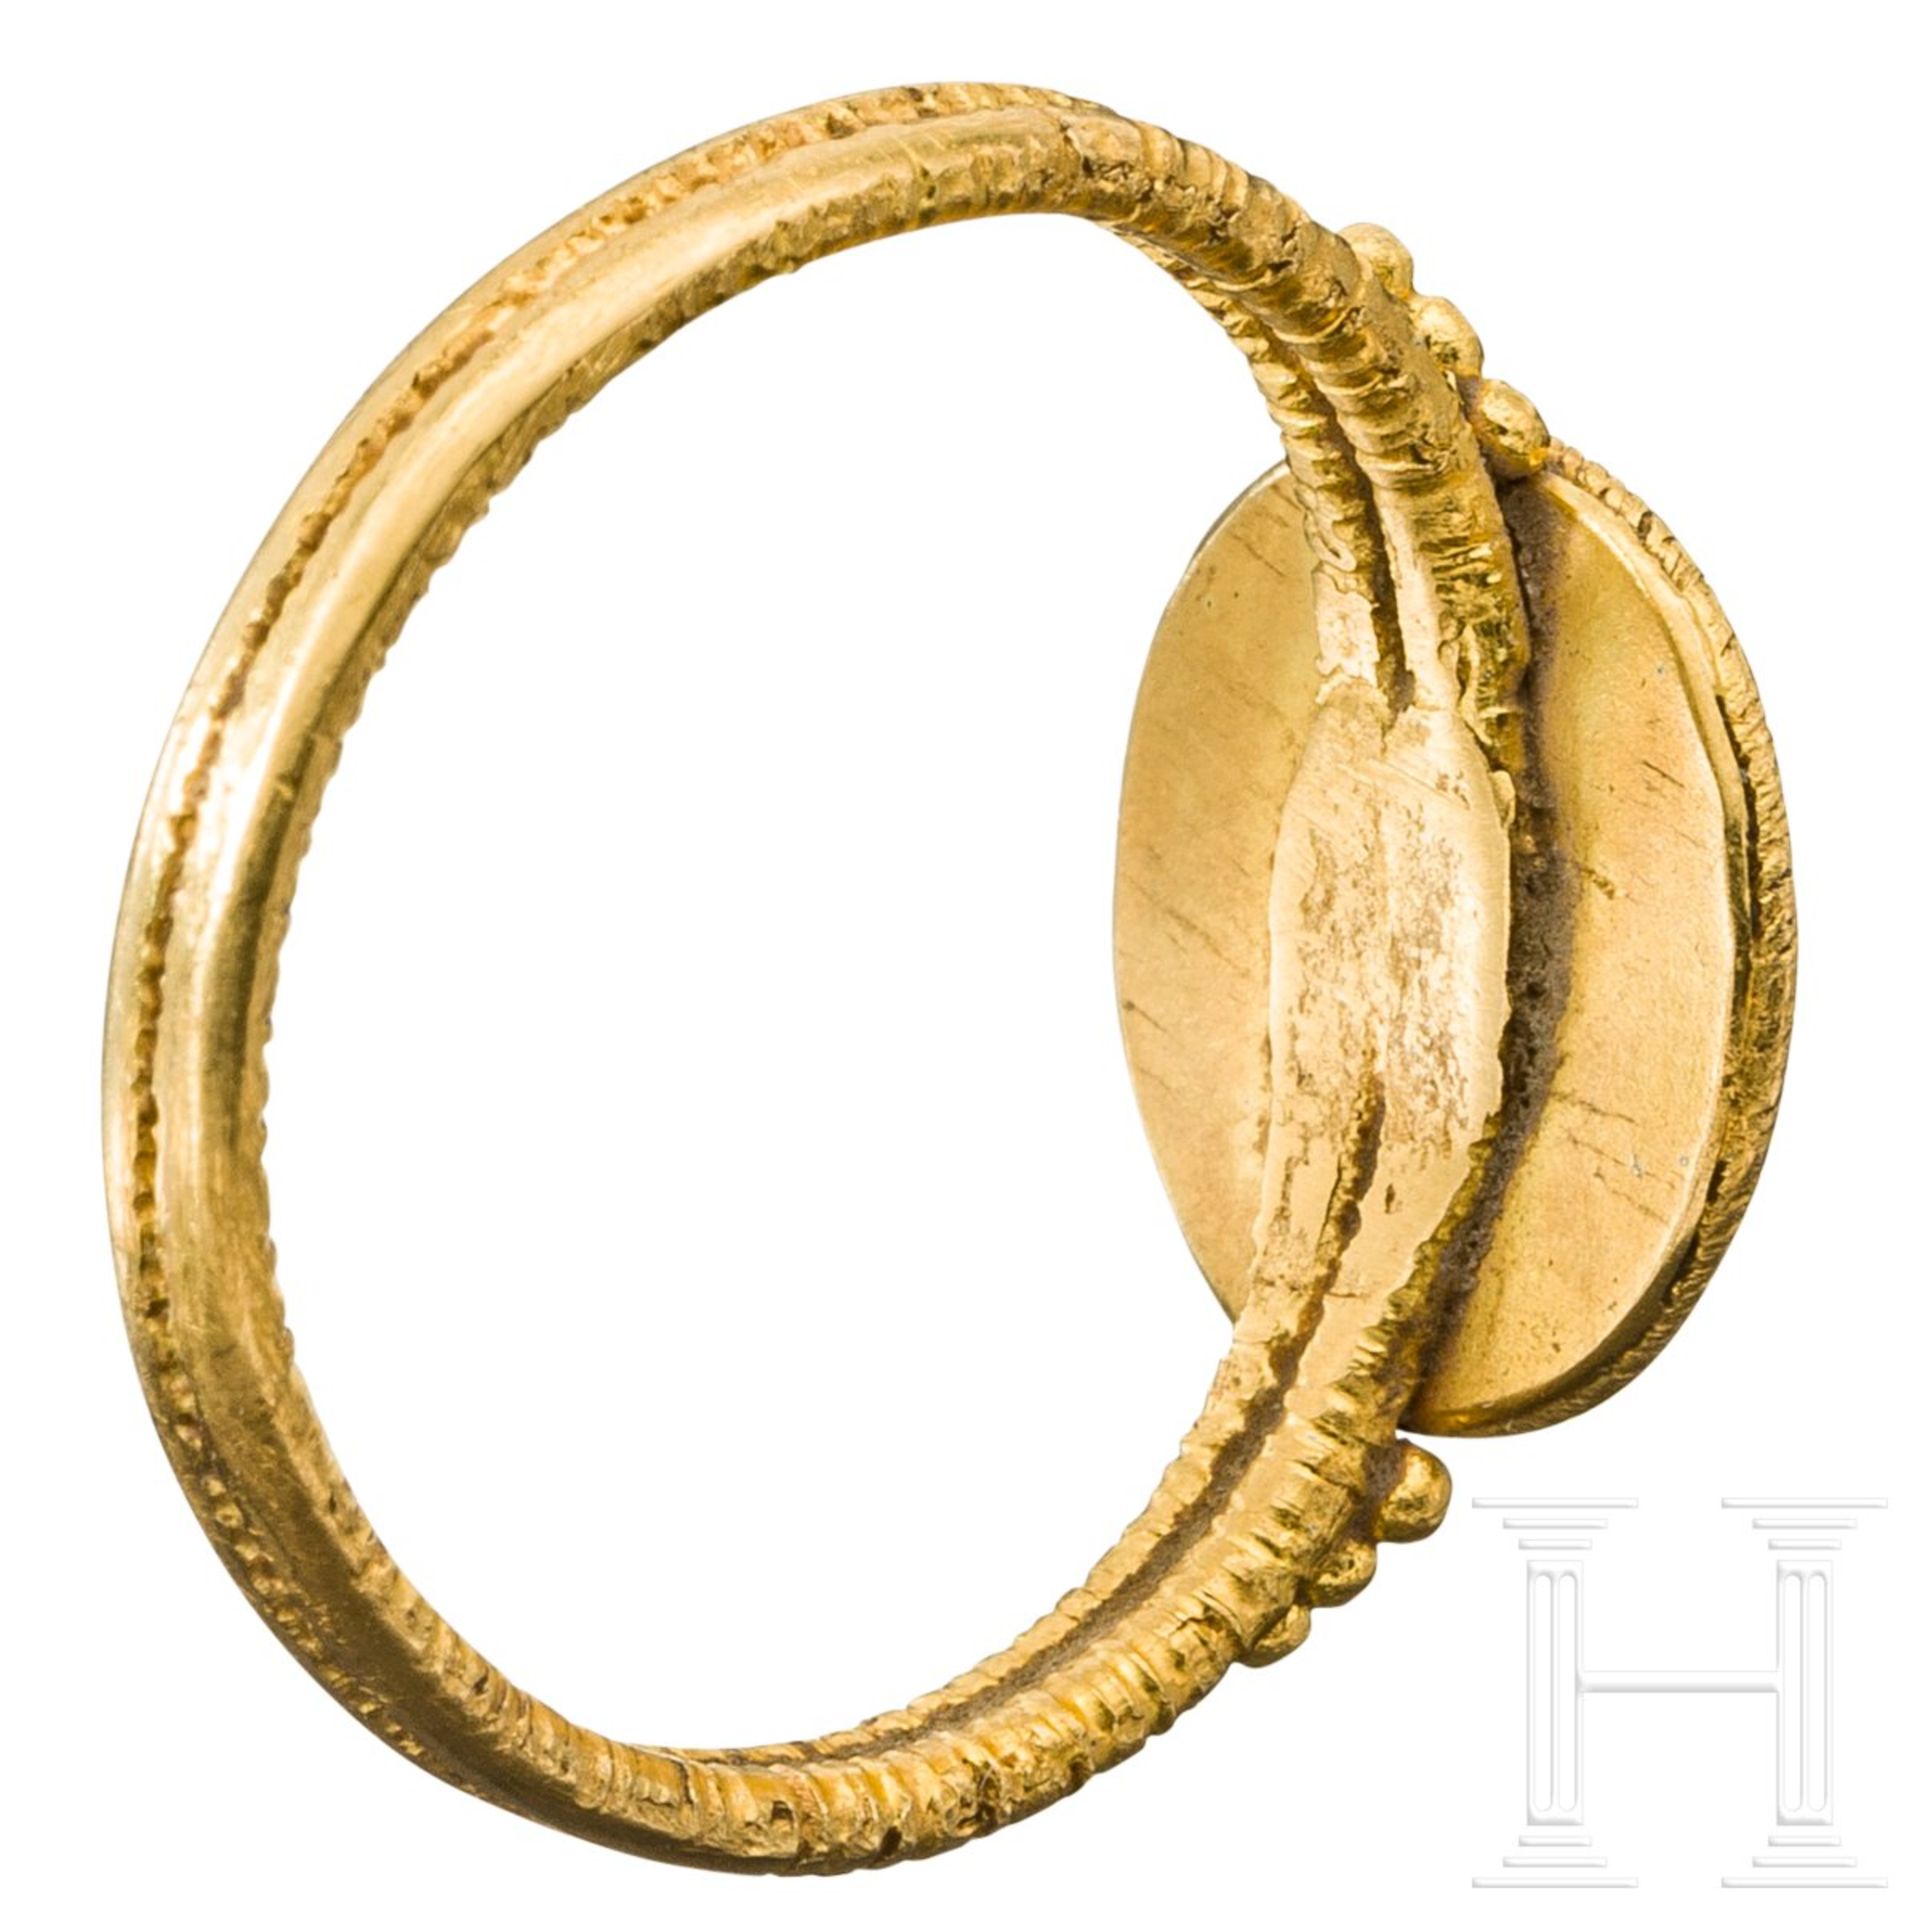 Goldener Ring mit Adlerkopf-Gemme im römischen Stil, 20. Jhdt. - Bild 3 aus 4